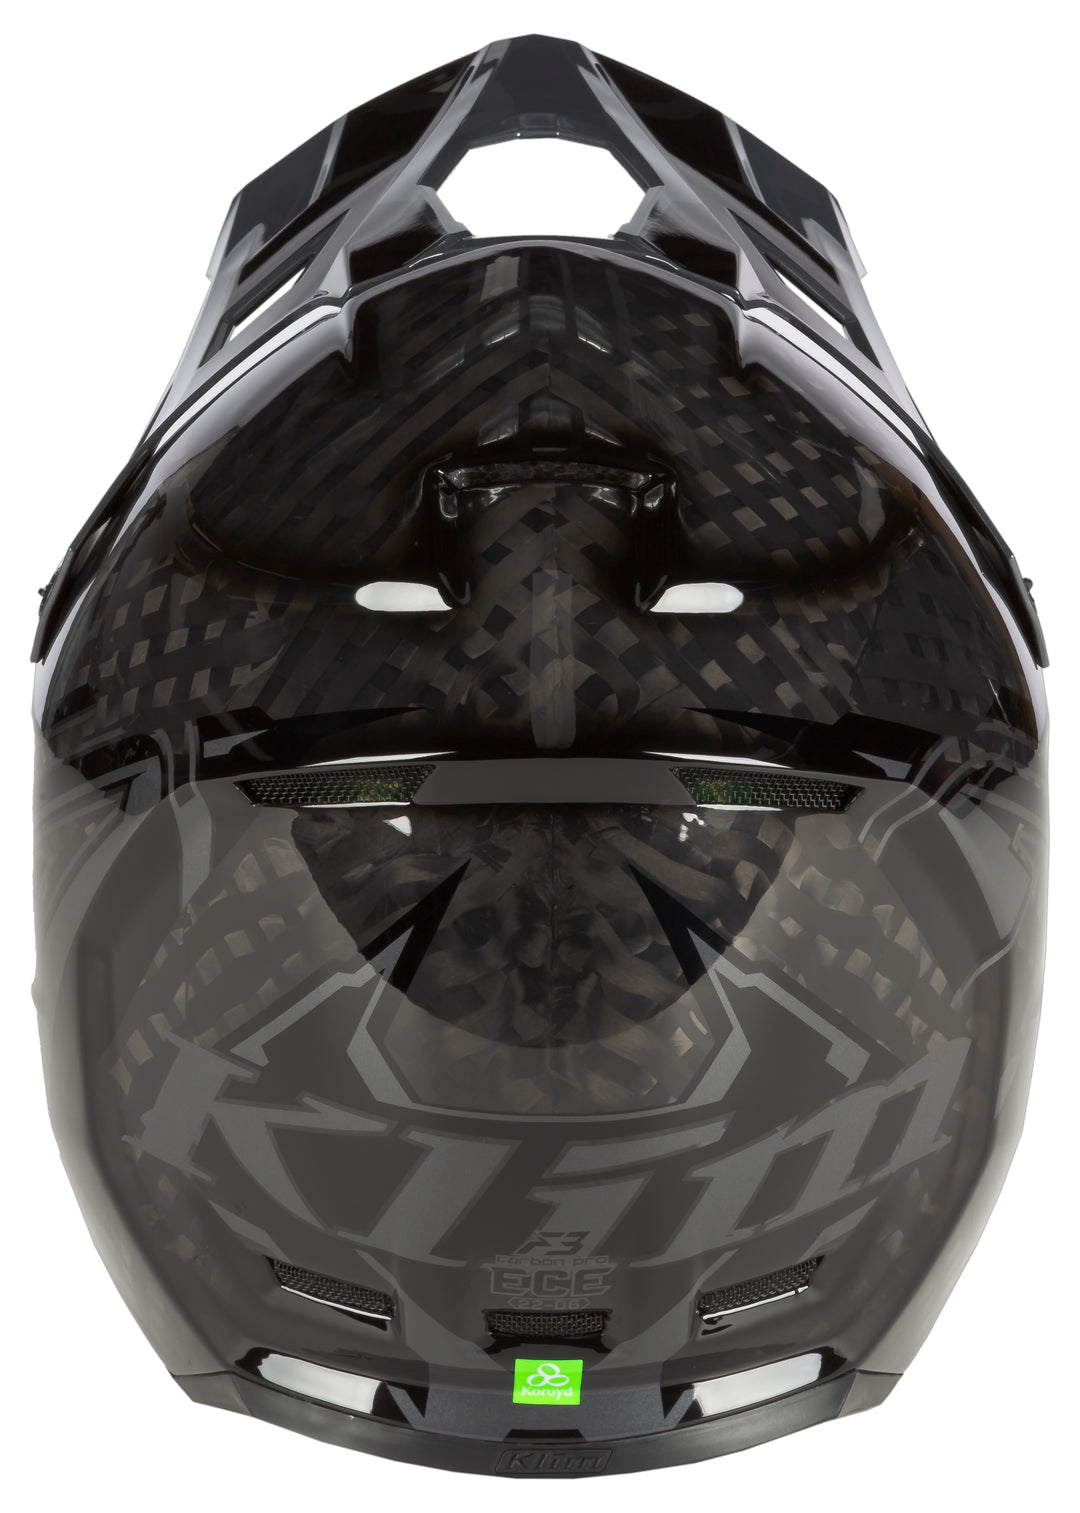 Klim F3 Carbon Pro Helmet ECE